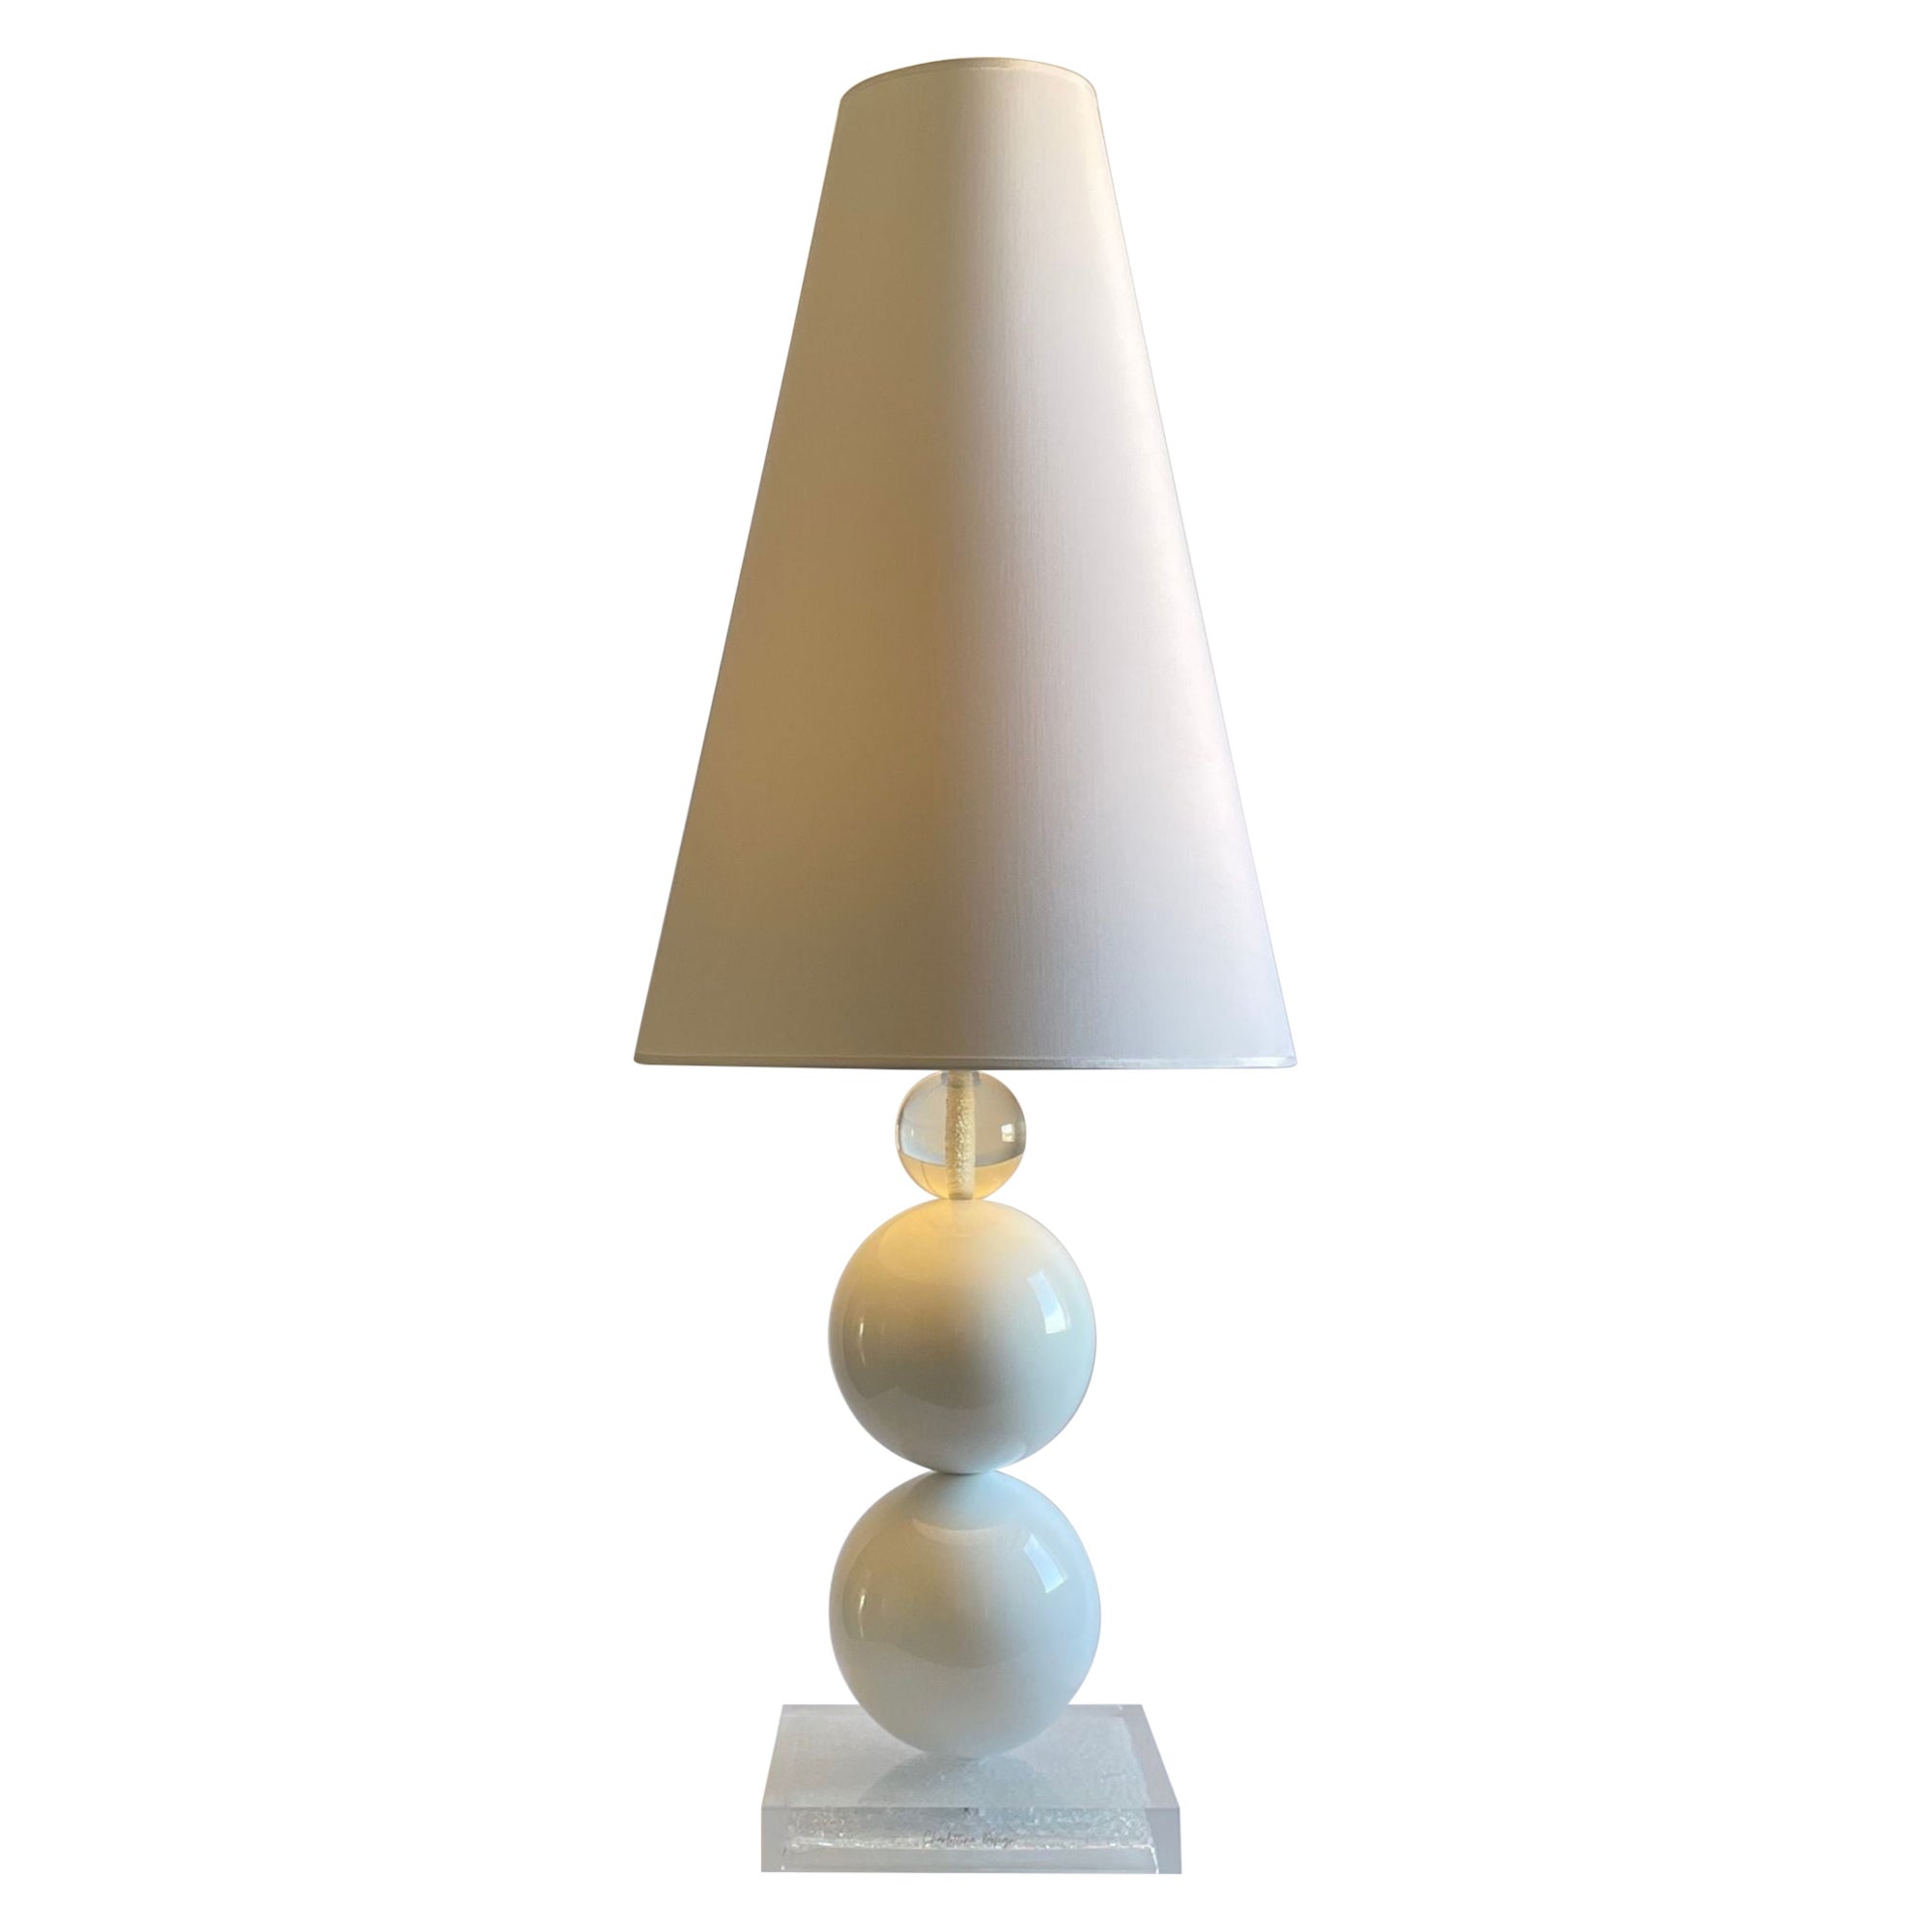 Lampe de table élégante, polyvalente, 100% design italien, joyau de la maison en vente